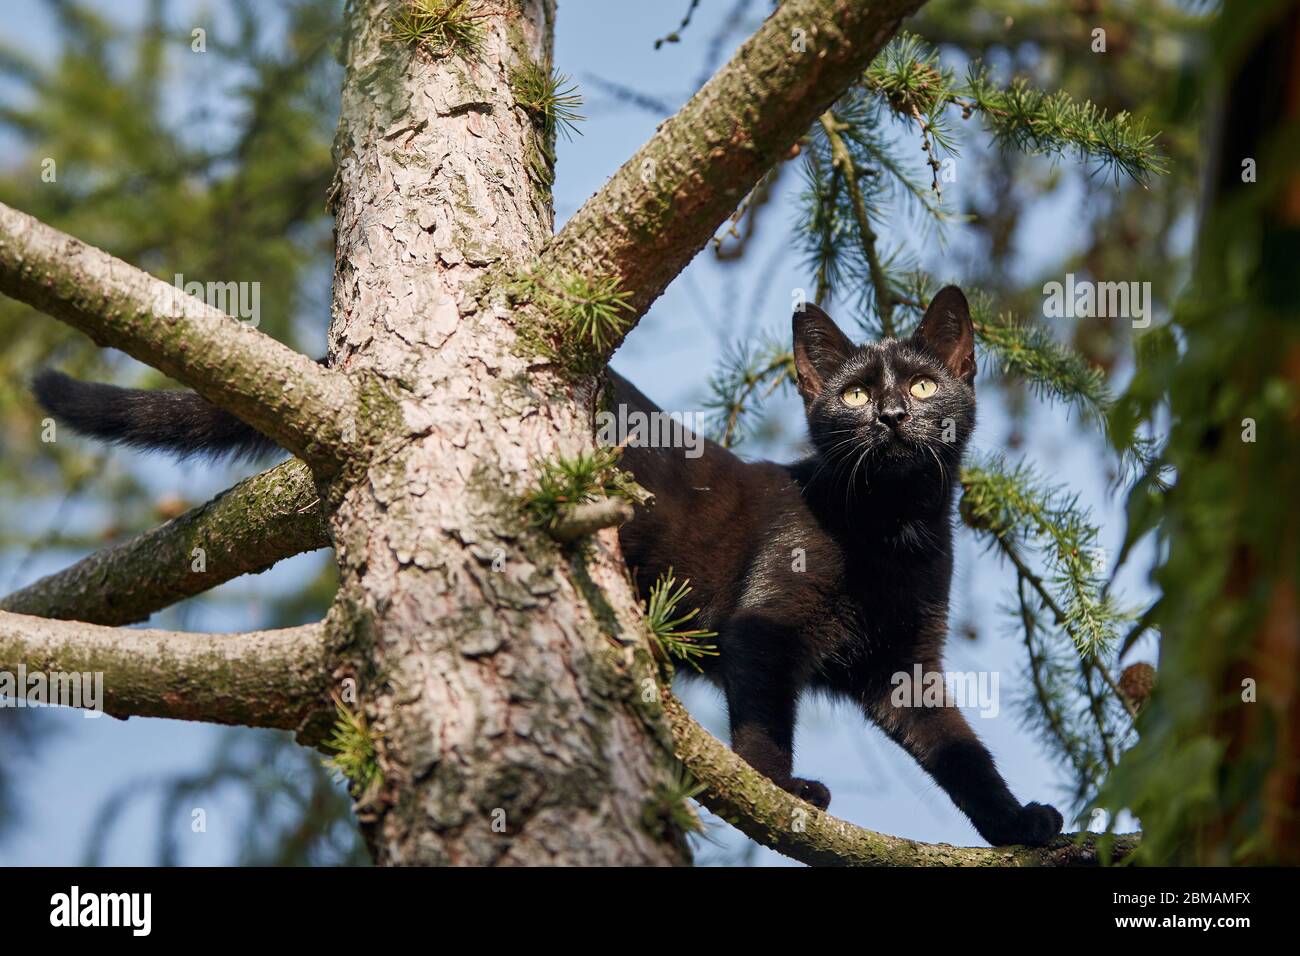 Vue à angle bas du chat noir avec les yeux jaunes sur l'arbre. Thèmes timidité, exploration et animaux perdus. Banque D'Images